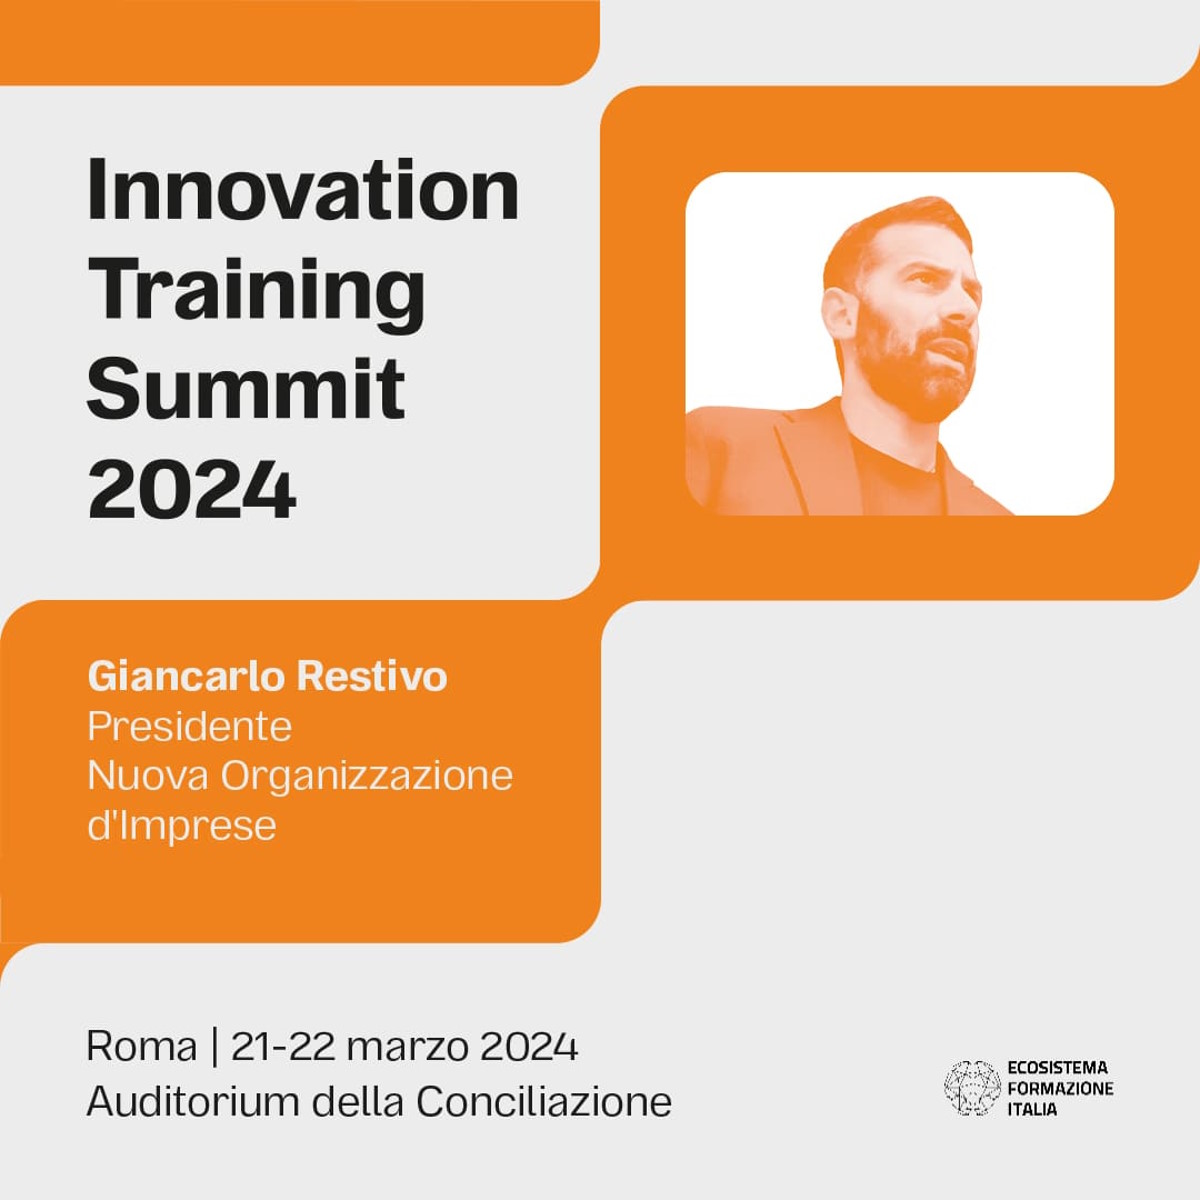 Innovation Training Summit: Un Imperdibile Appuntamento per i Professionisti della formazione, anche per la sicurezza sul lavoro